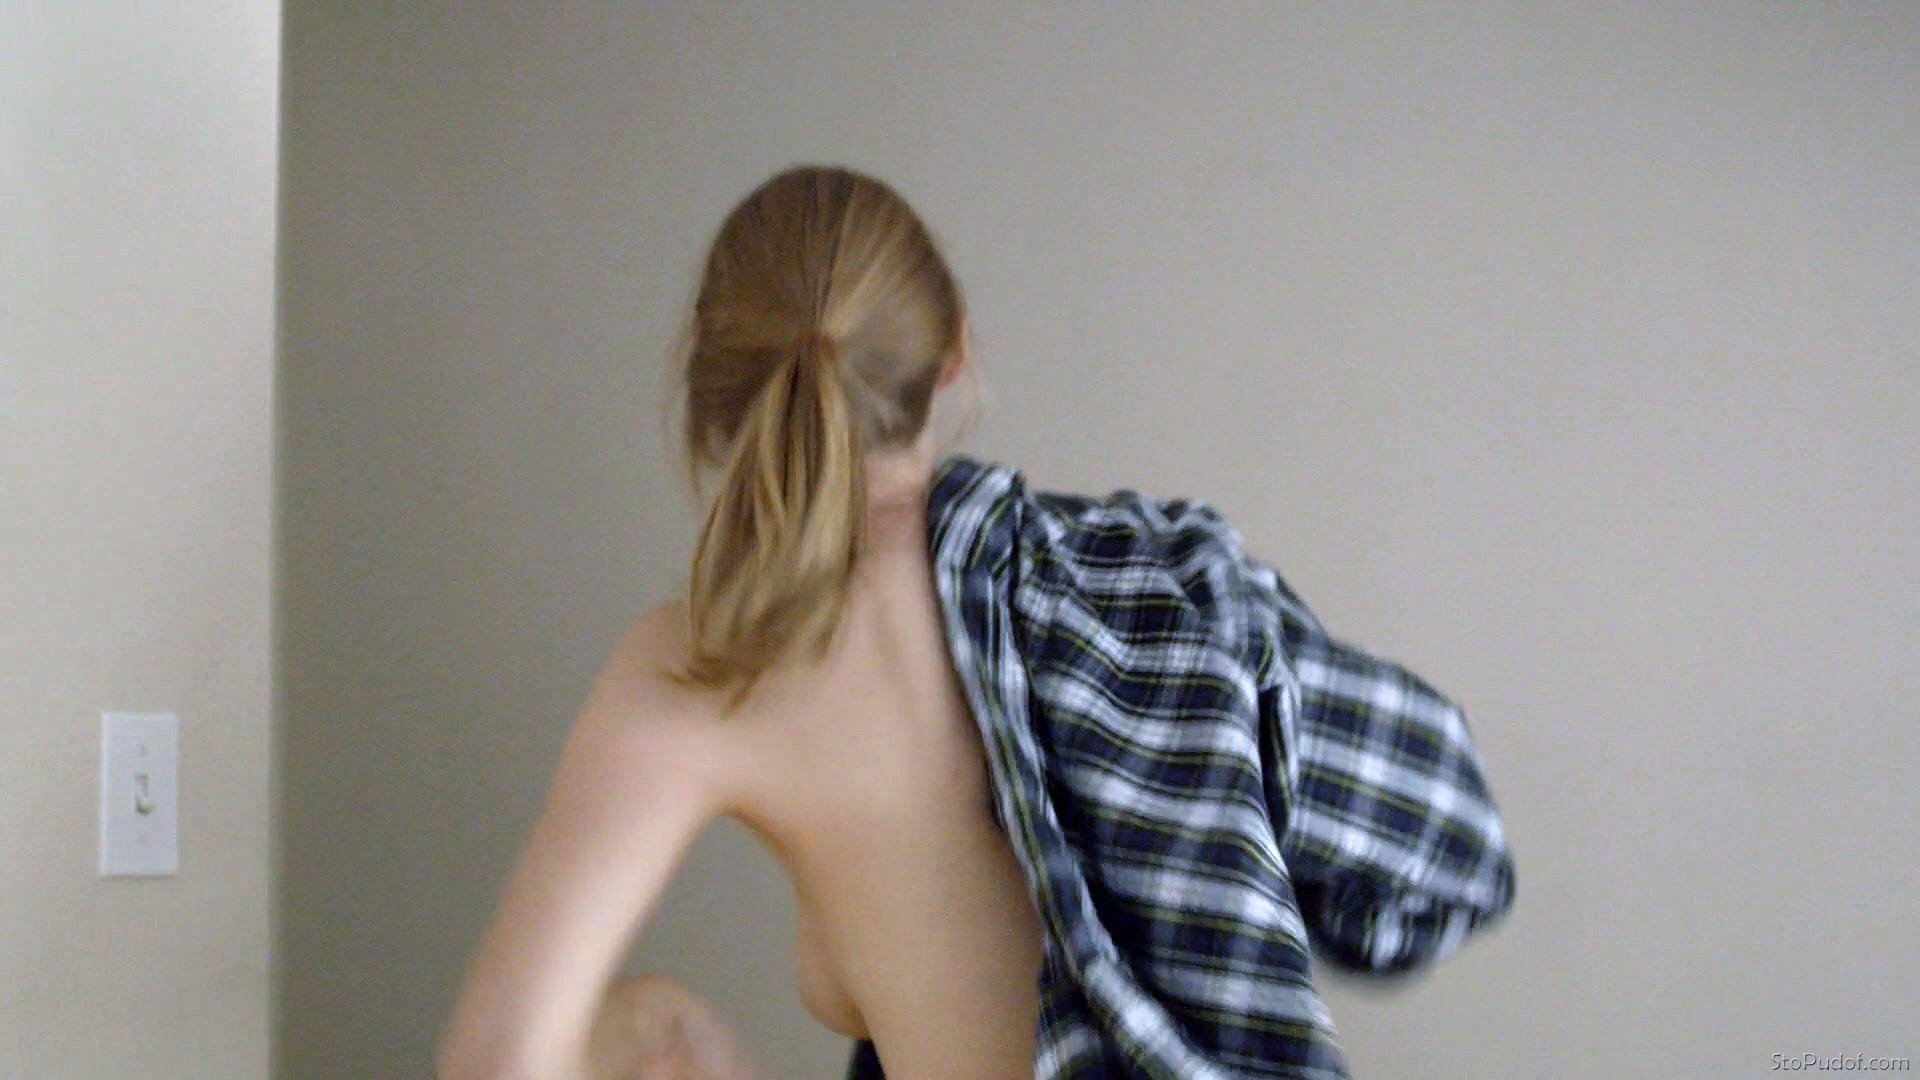 naked photos leaked of Alyssa Sutherland - UkPhotoSafari